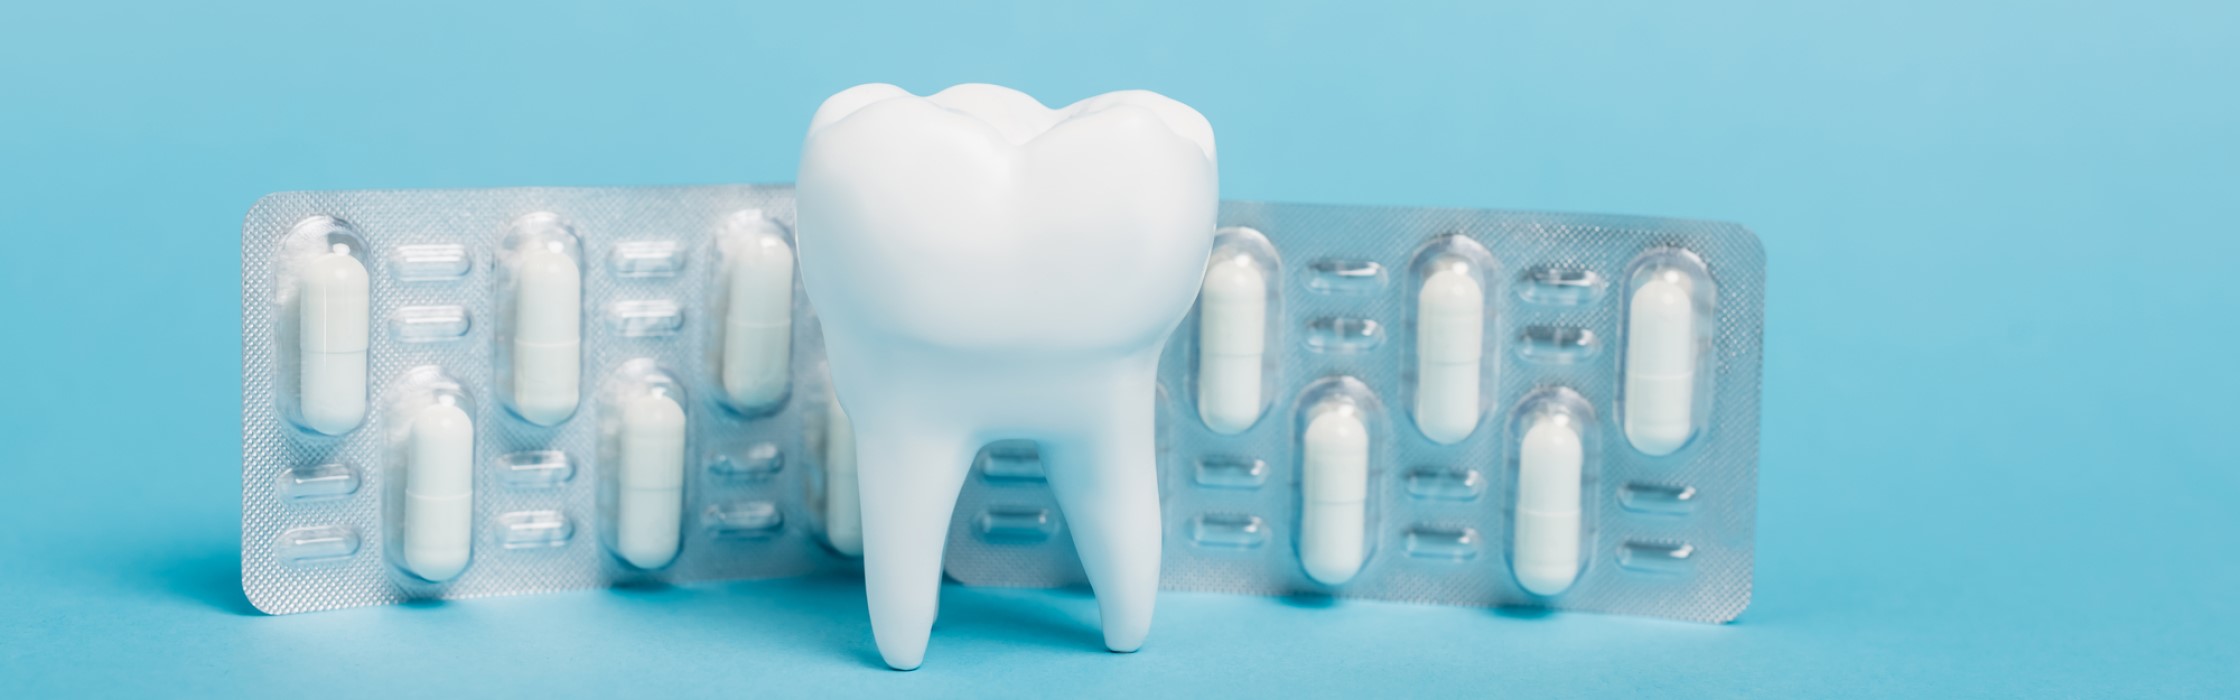 Welches Schmerzmittel hilft bei Zahnschmerzen?